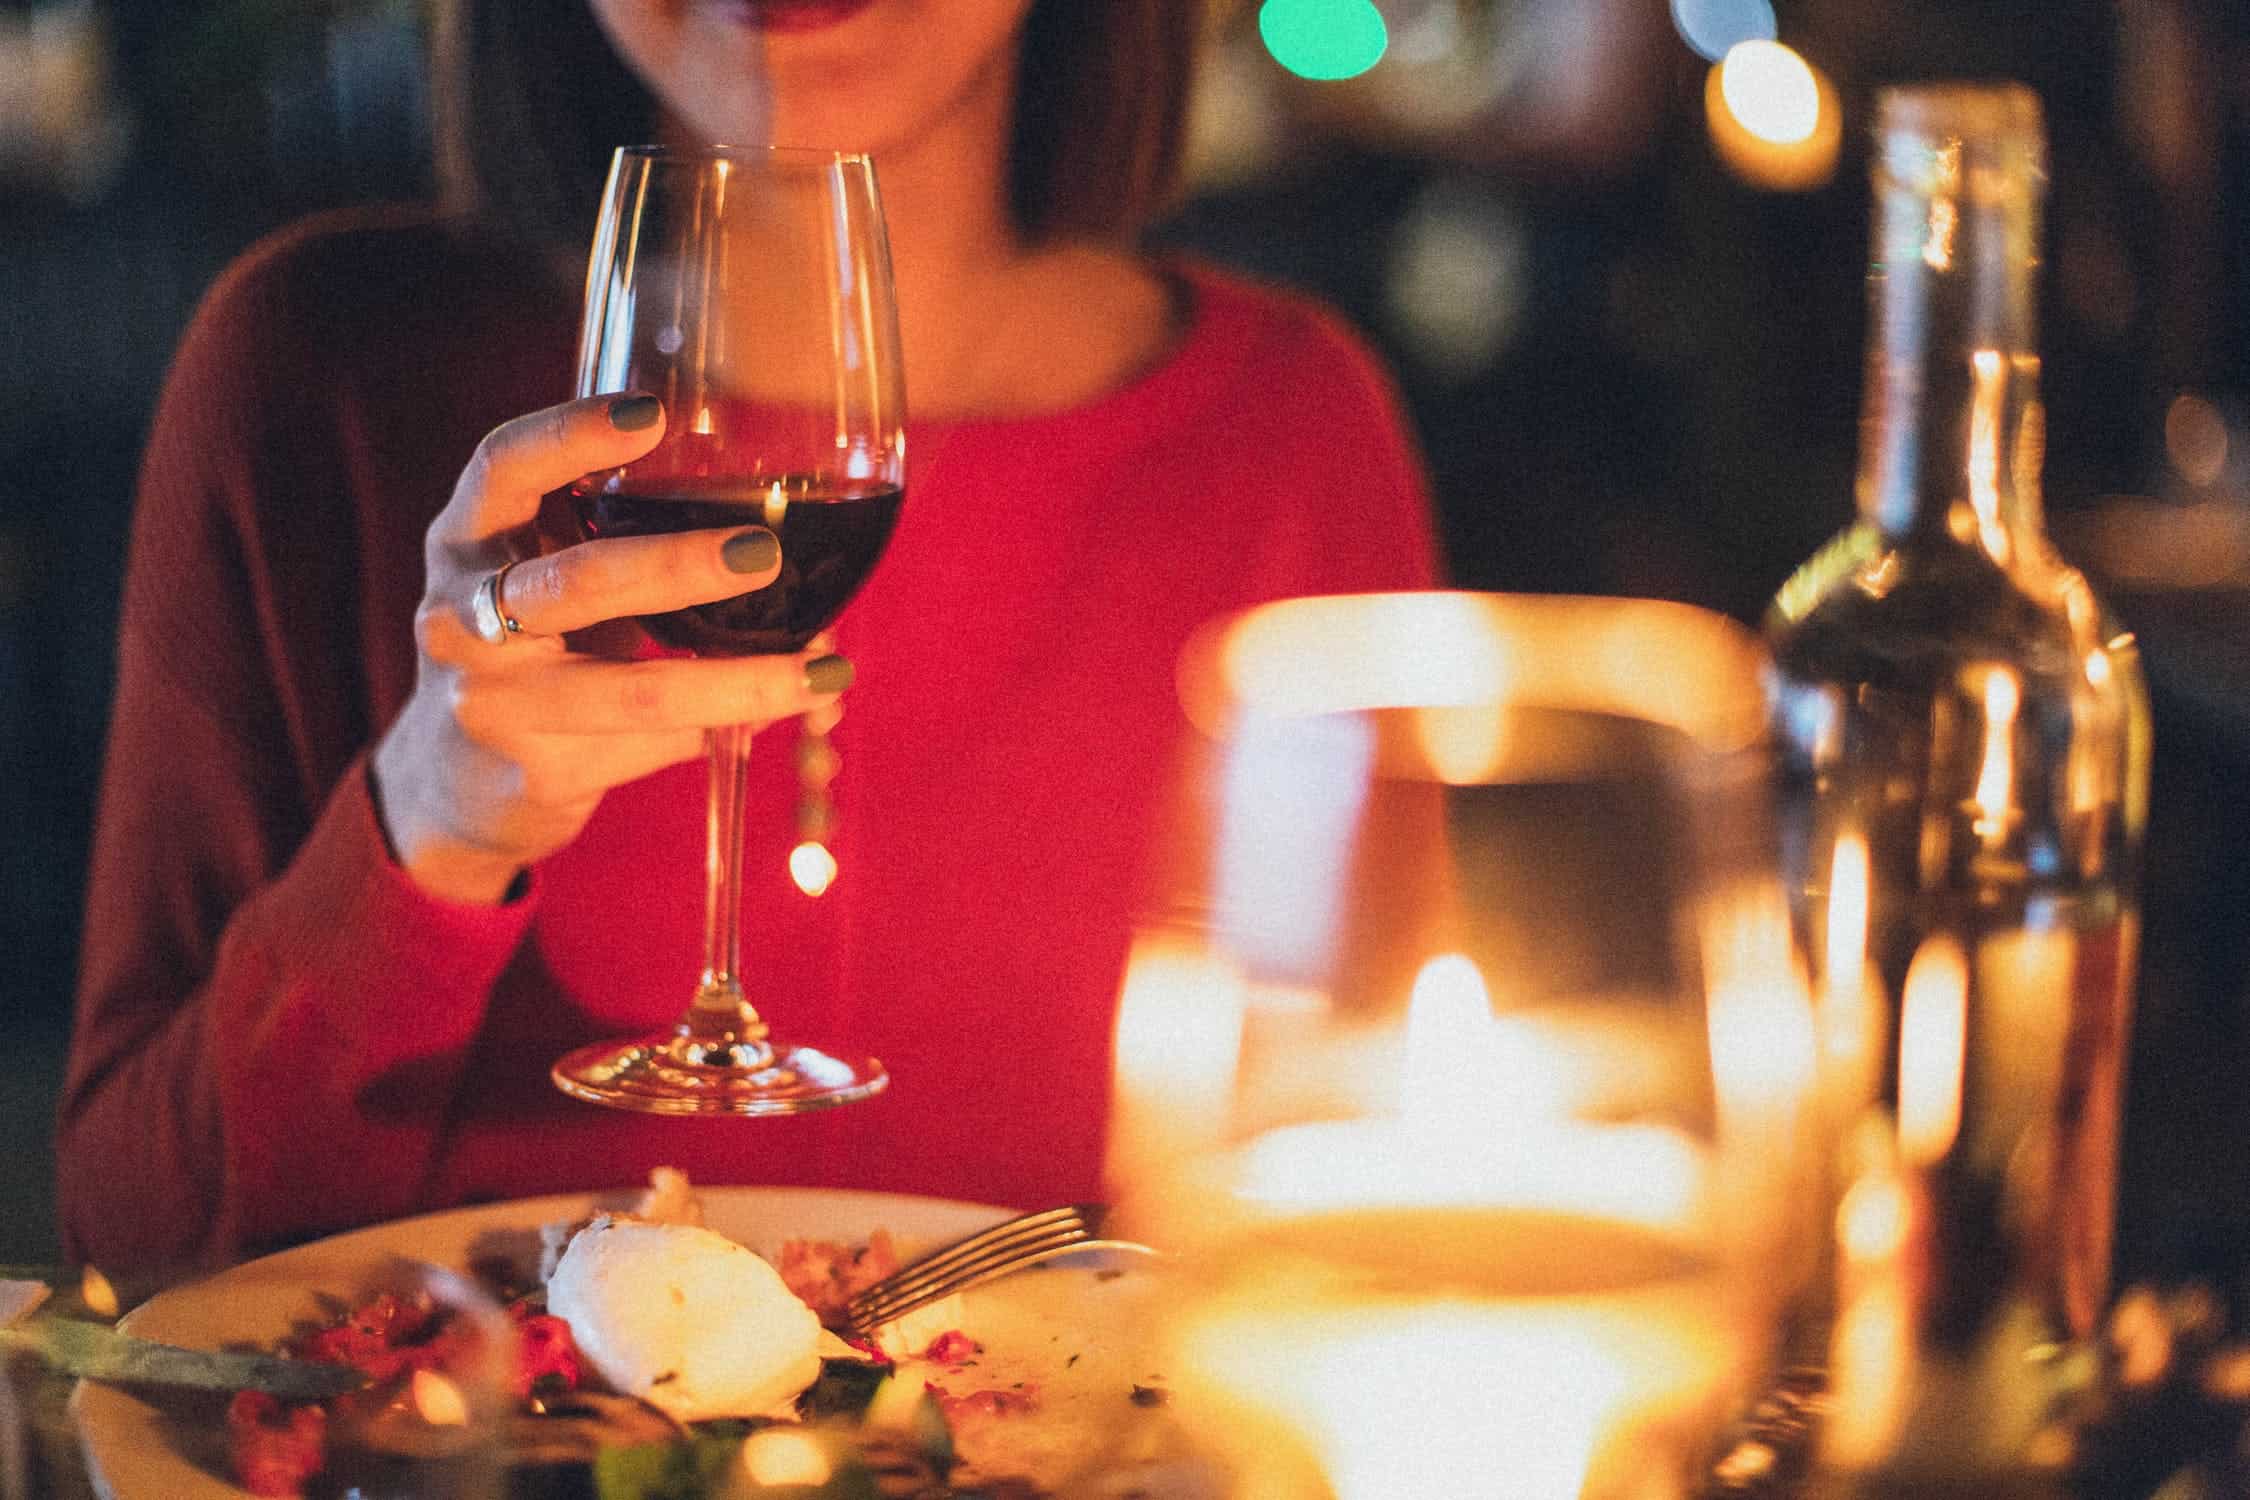 Jakimi zasadami kierować się dobierając wino do posiłku?